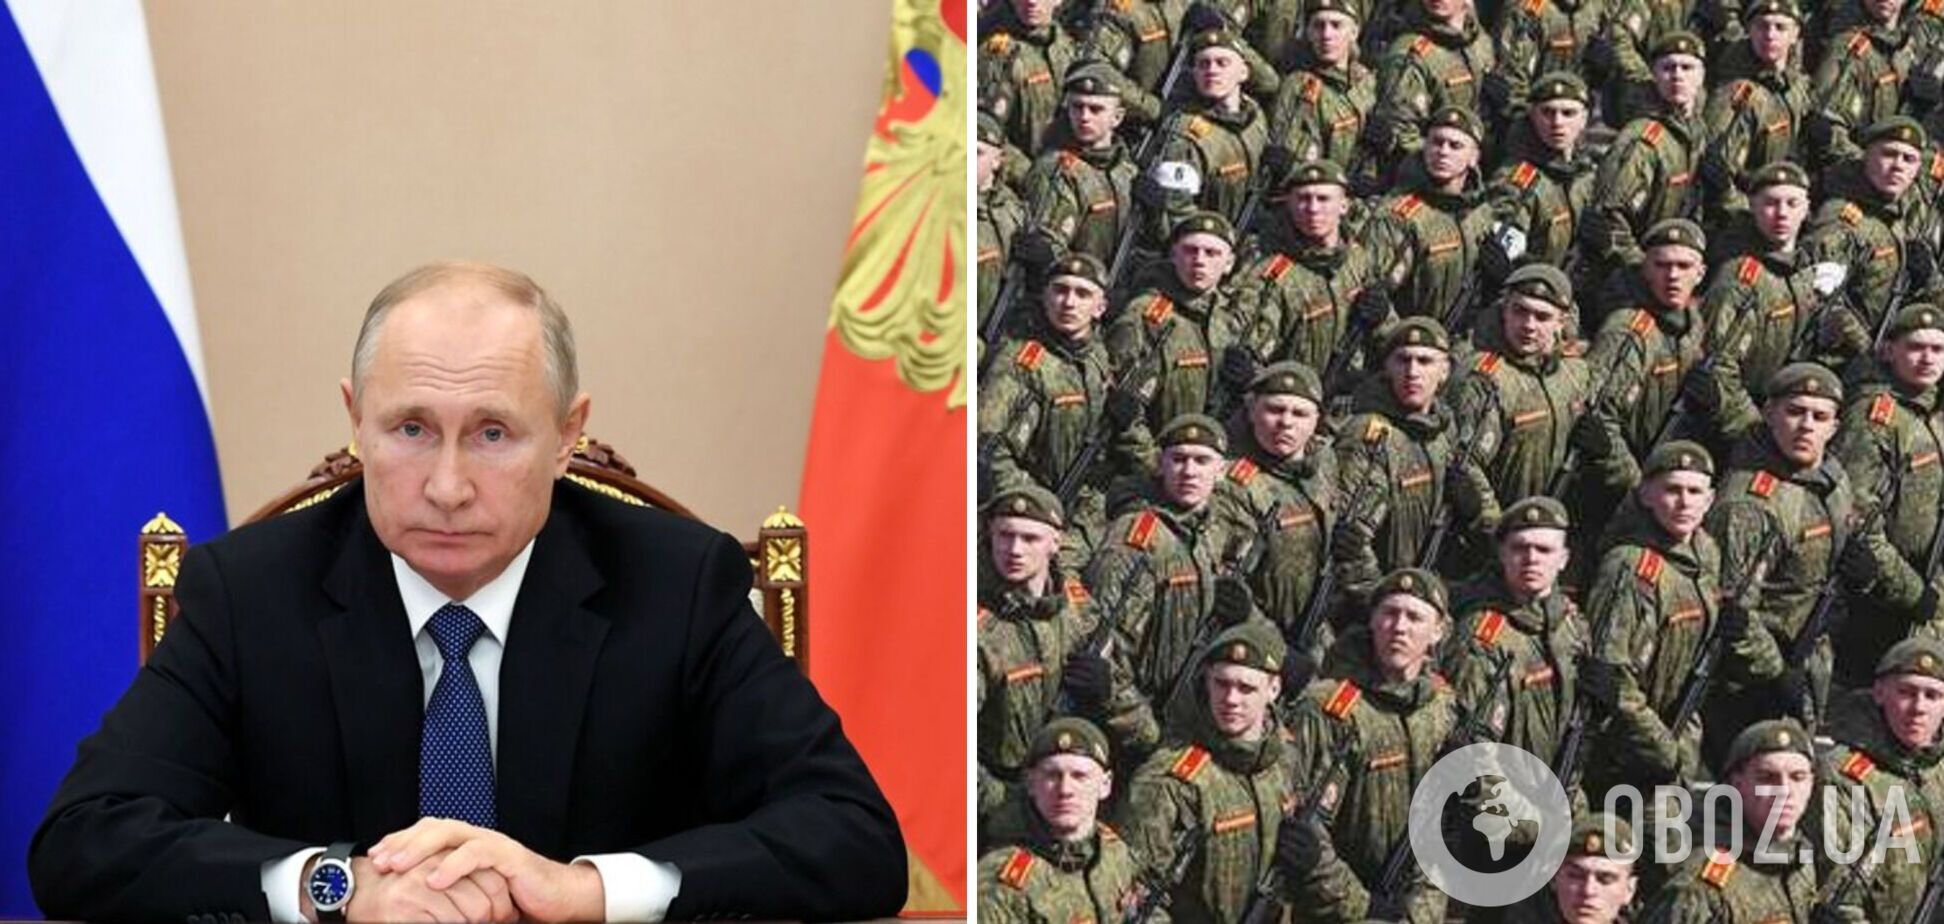 Плюс 137 тысяч: зачем Путин увеличивает армию?